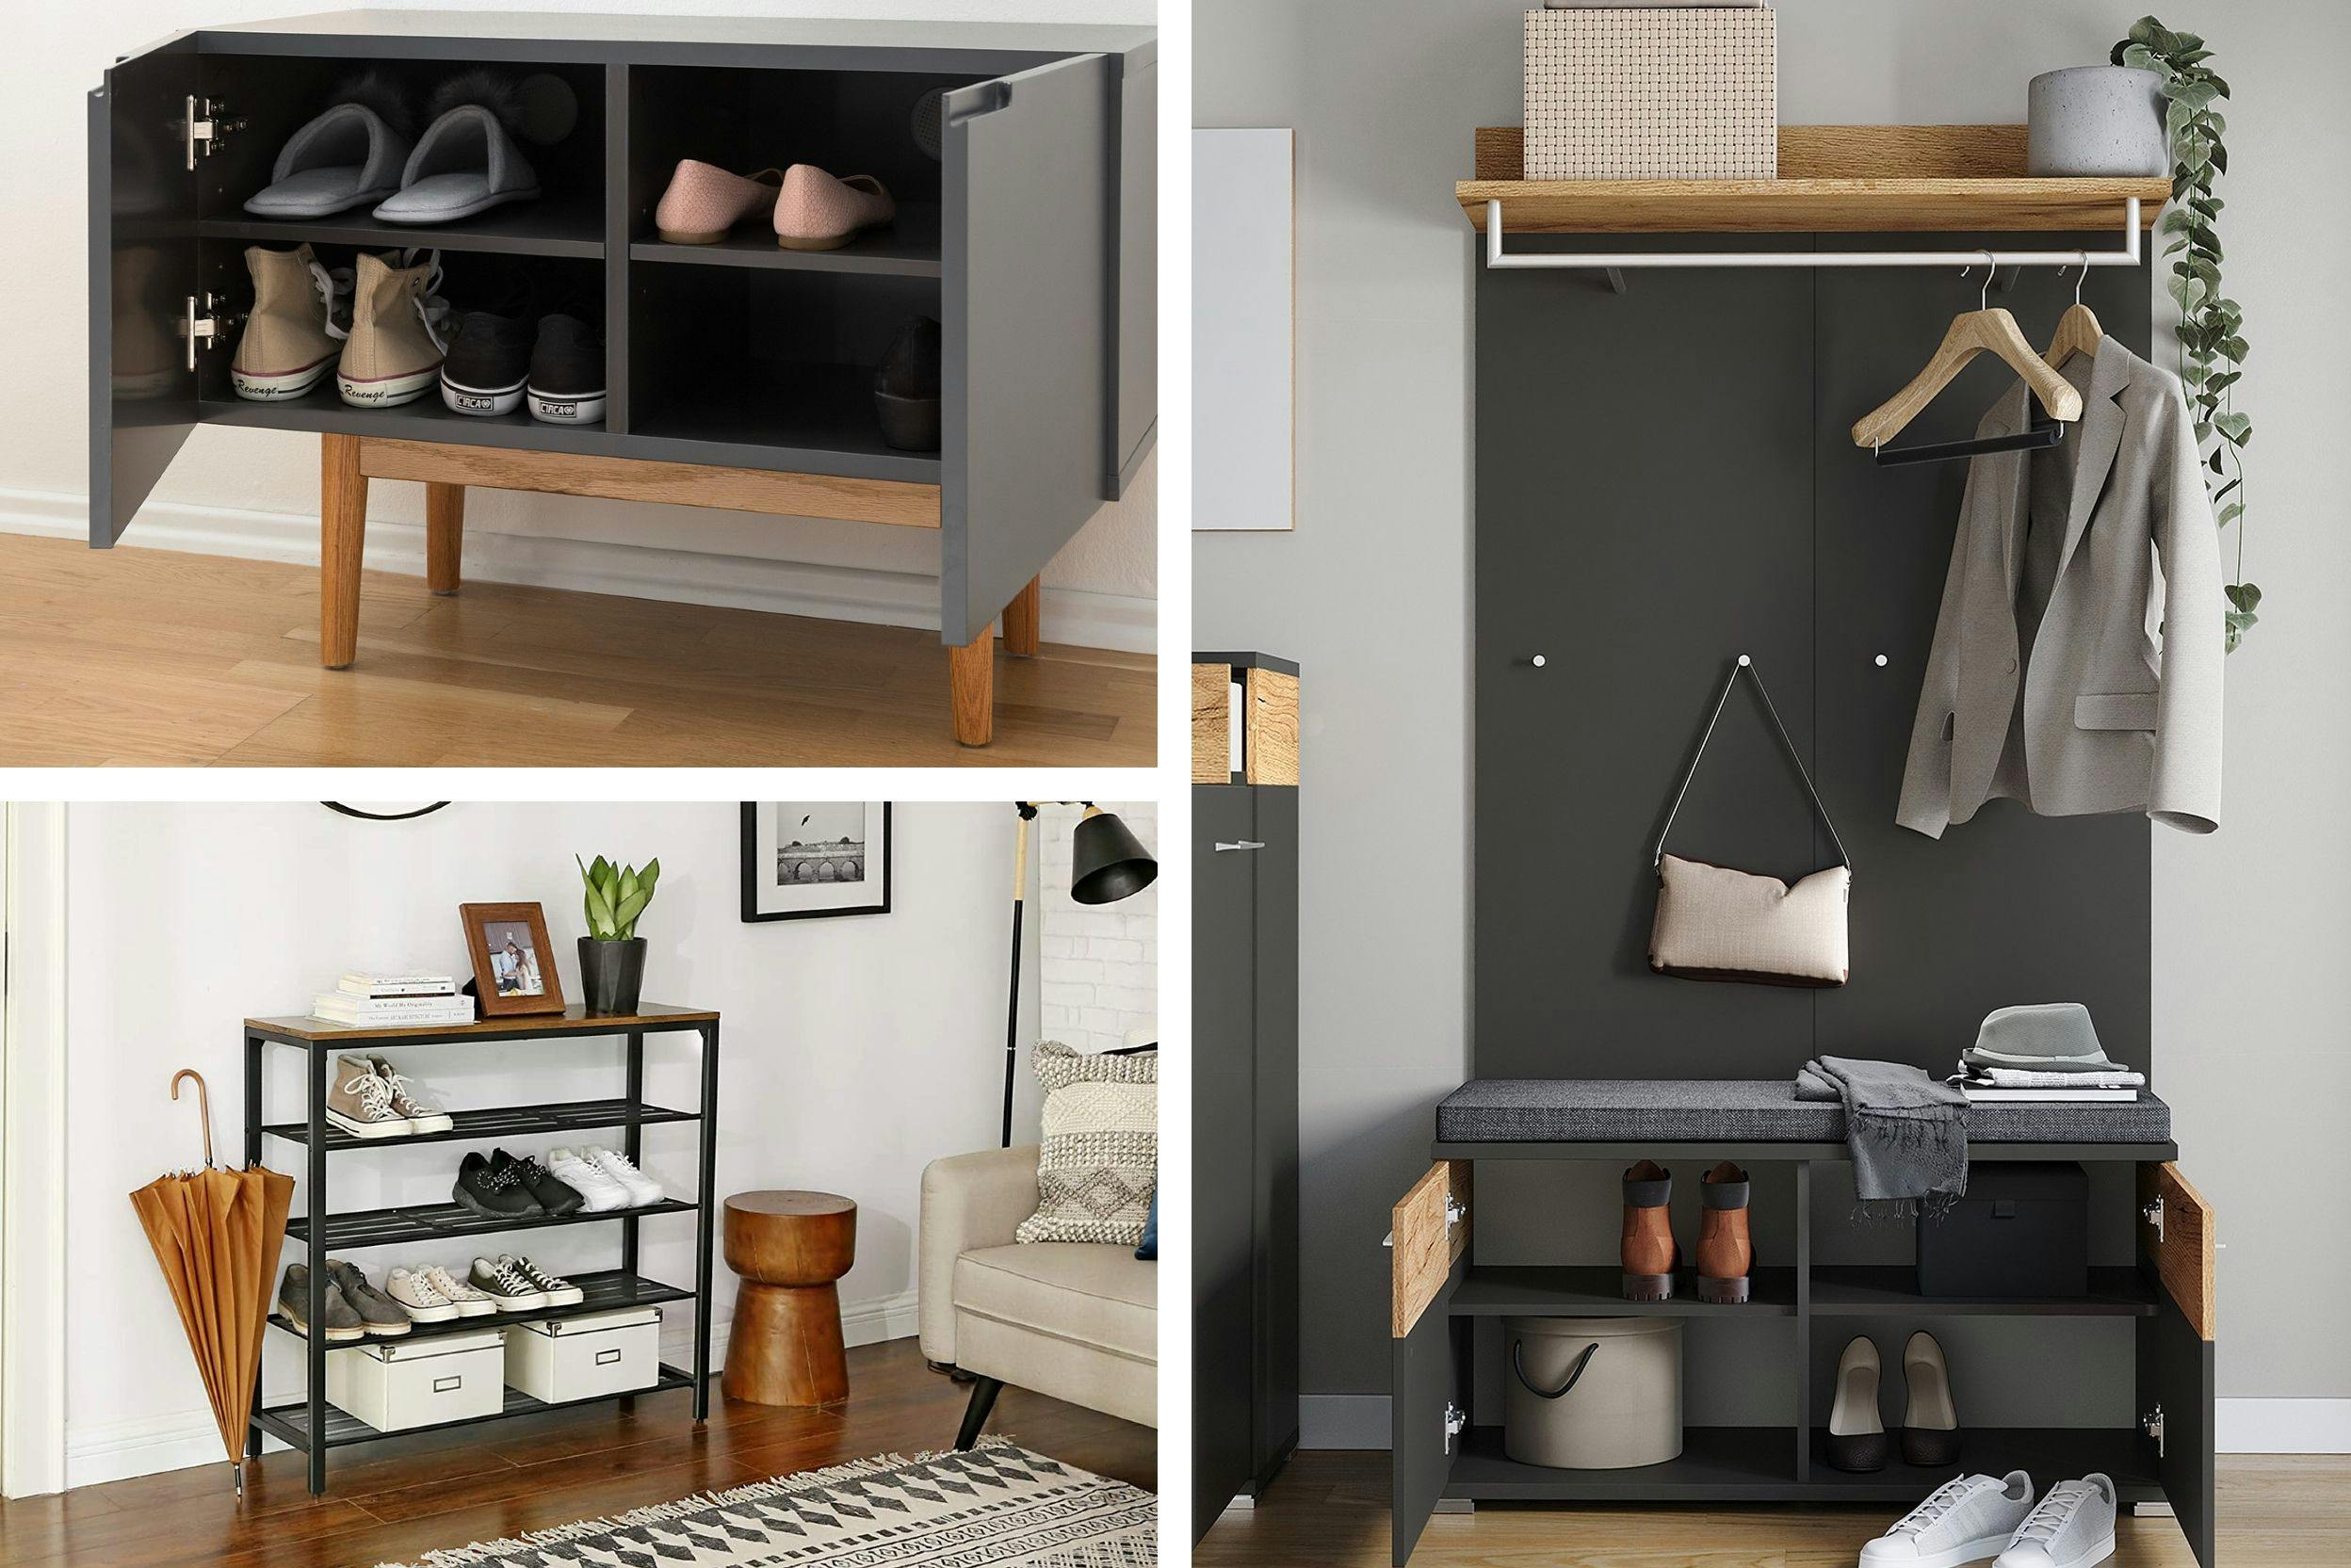 Tous les meubles et astuces pratiques pour ranger sa maison - Blog